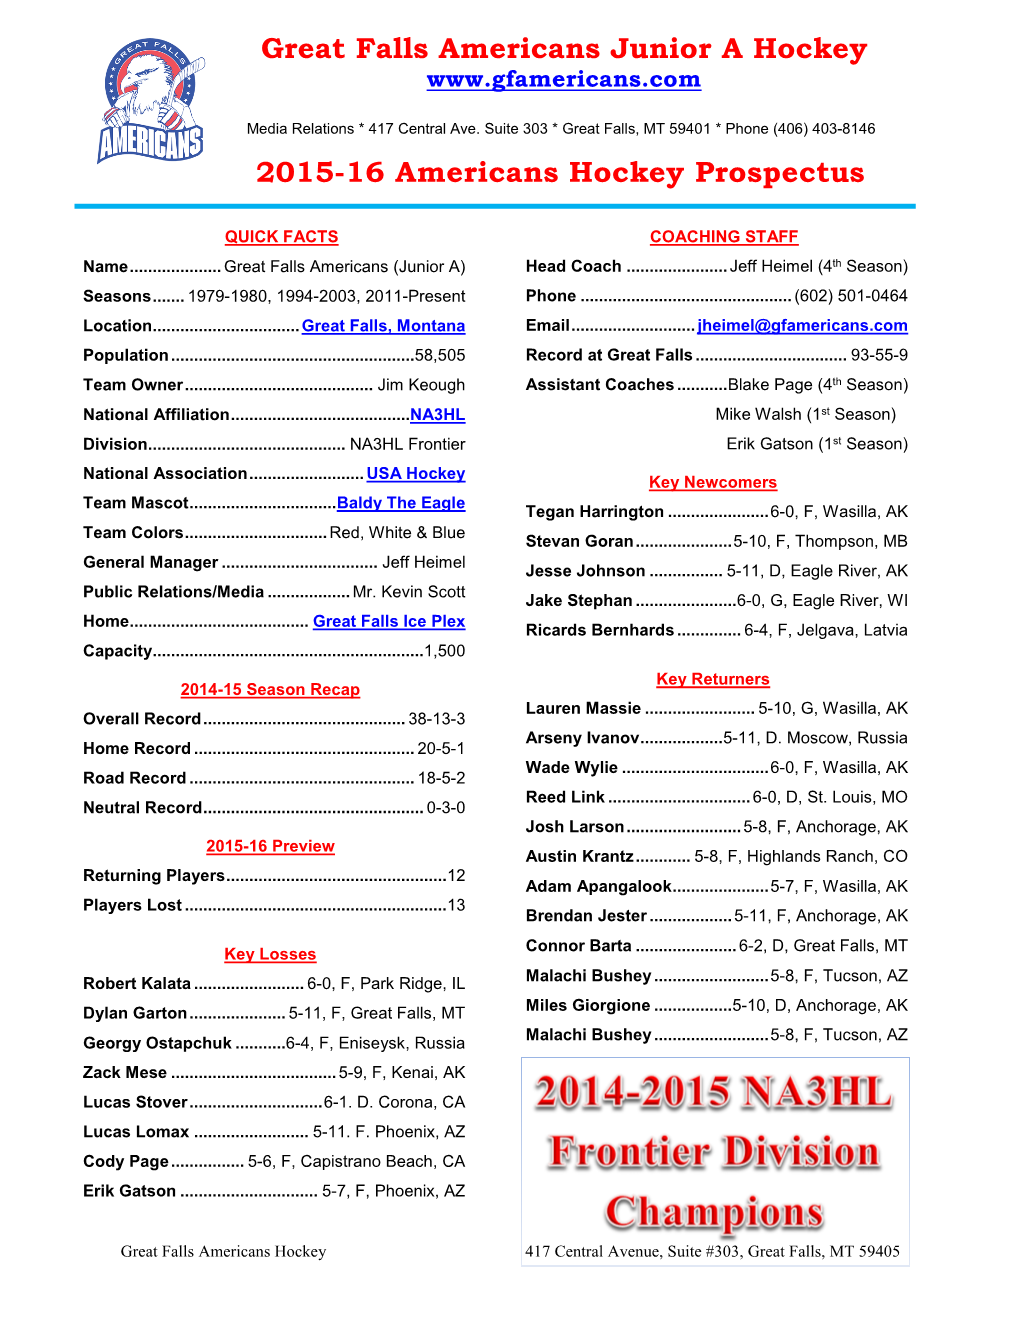 Great Falls Americans Junior a Hockey 2015-16 Americans Hockey